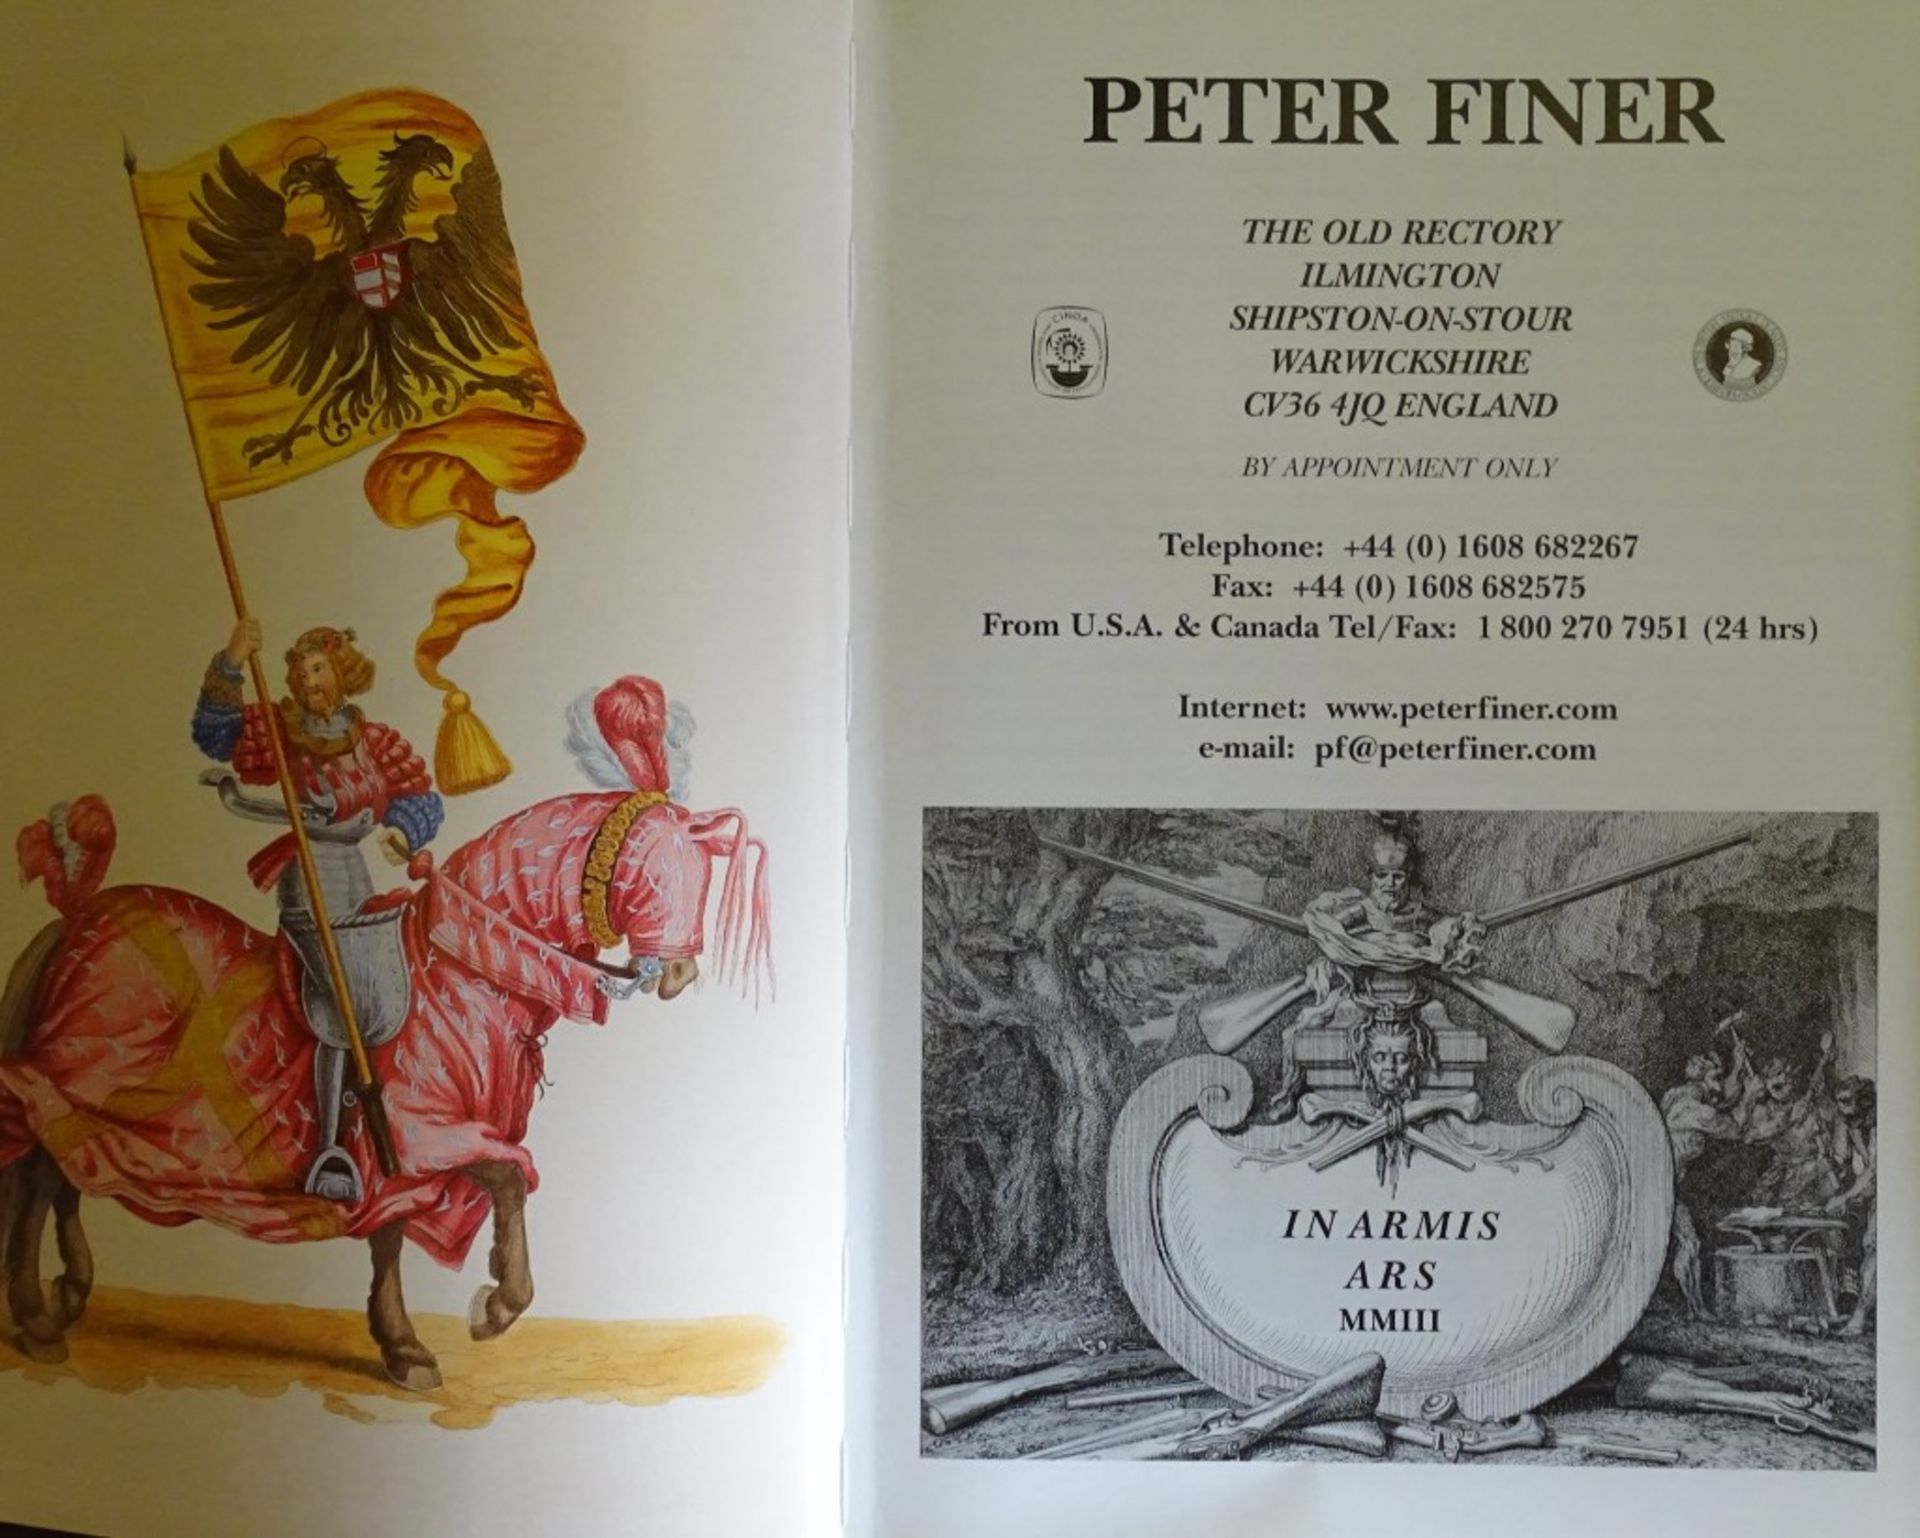 Zwei Galeriekataloge,Peter Finer - The old Rectory Ilmington, in Englisch geschrieben - Bild 2 aus 10